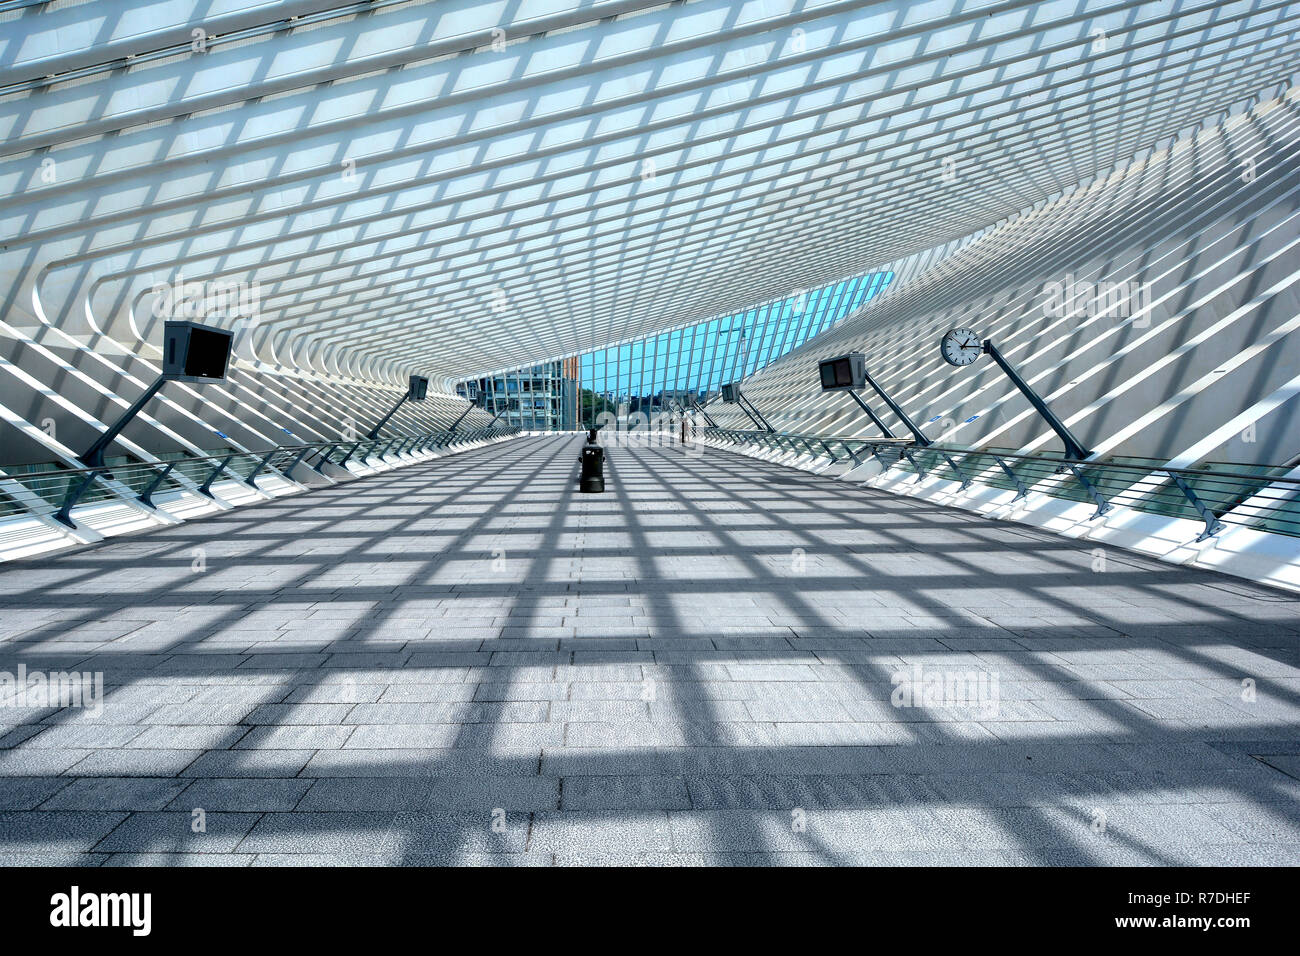 Wallonie d ombre symétrique sunshine architecture moderne structure de toit verre & design transports gare building Belgique Liège Banque D'Images